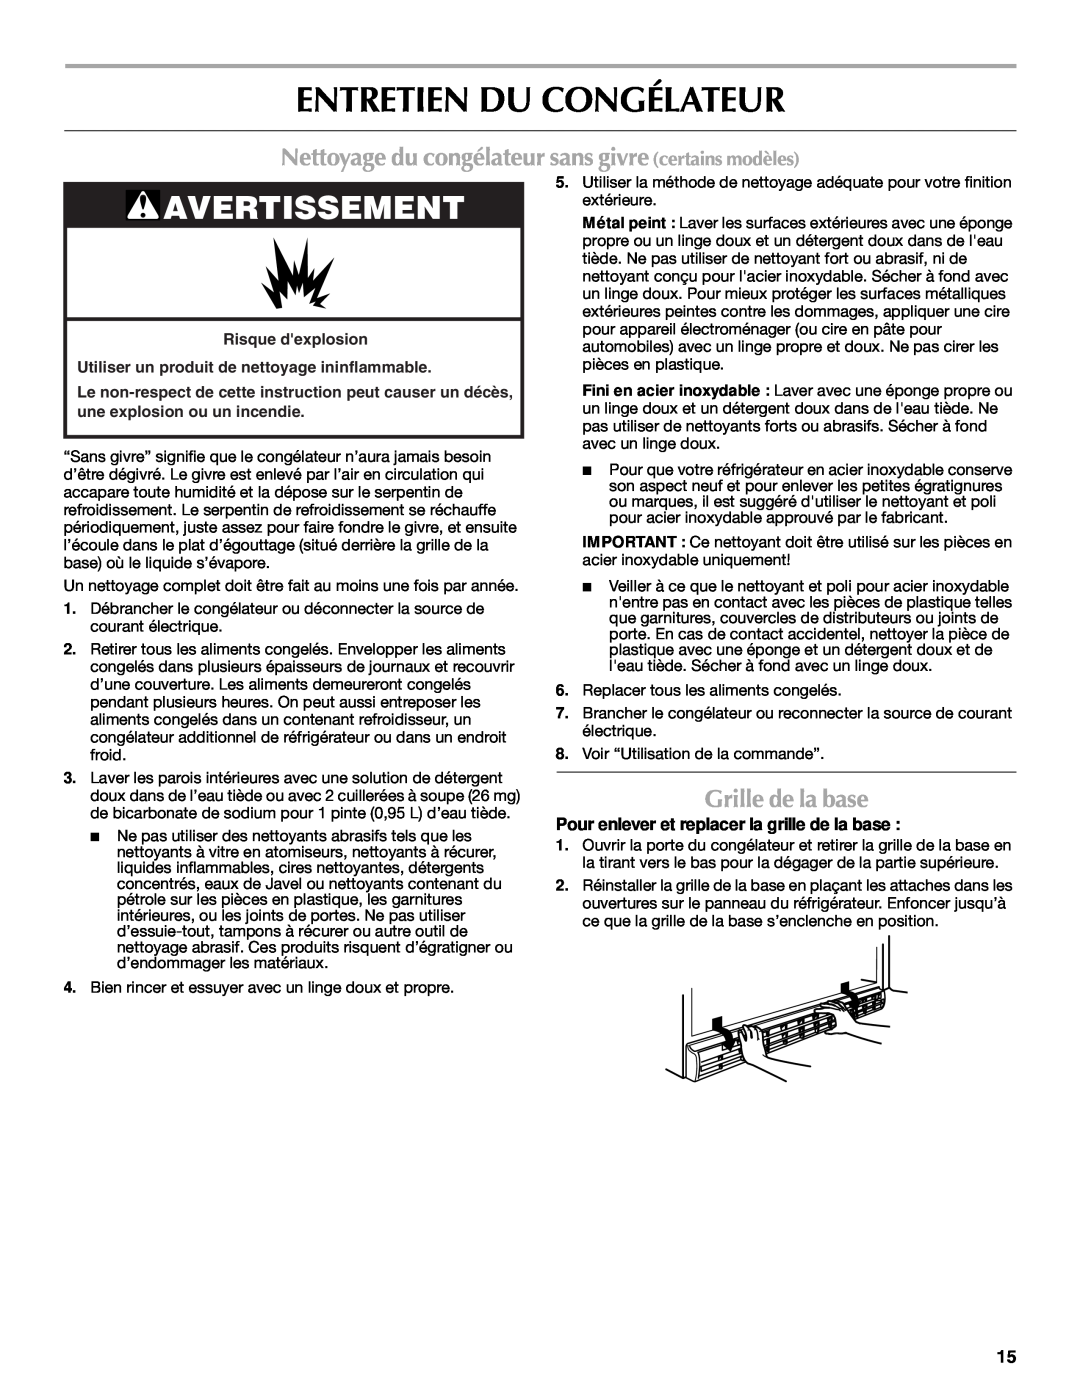 Maytag 1-82180-002 manual Entretien Du Congélateur, Nettoyage du congélateur sans givre certains modèles, Grille de la base 